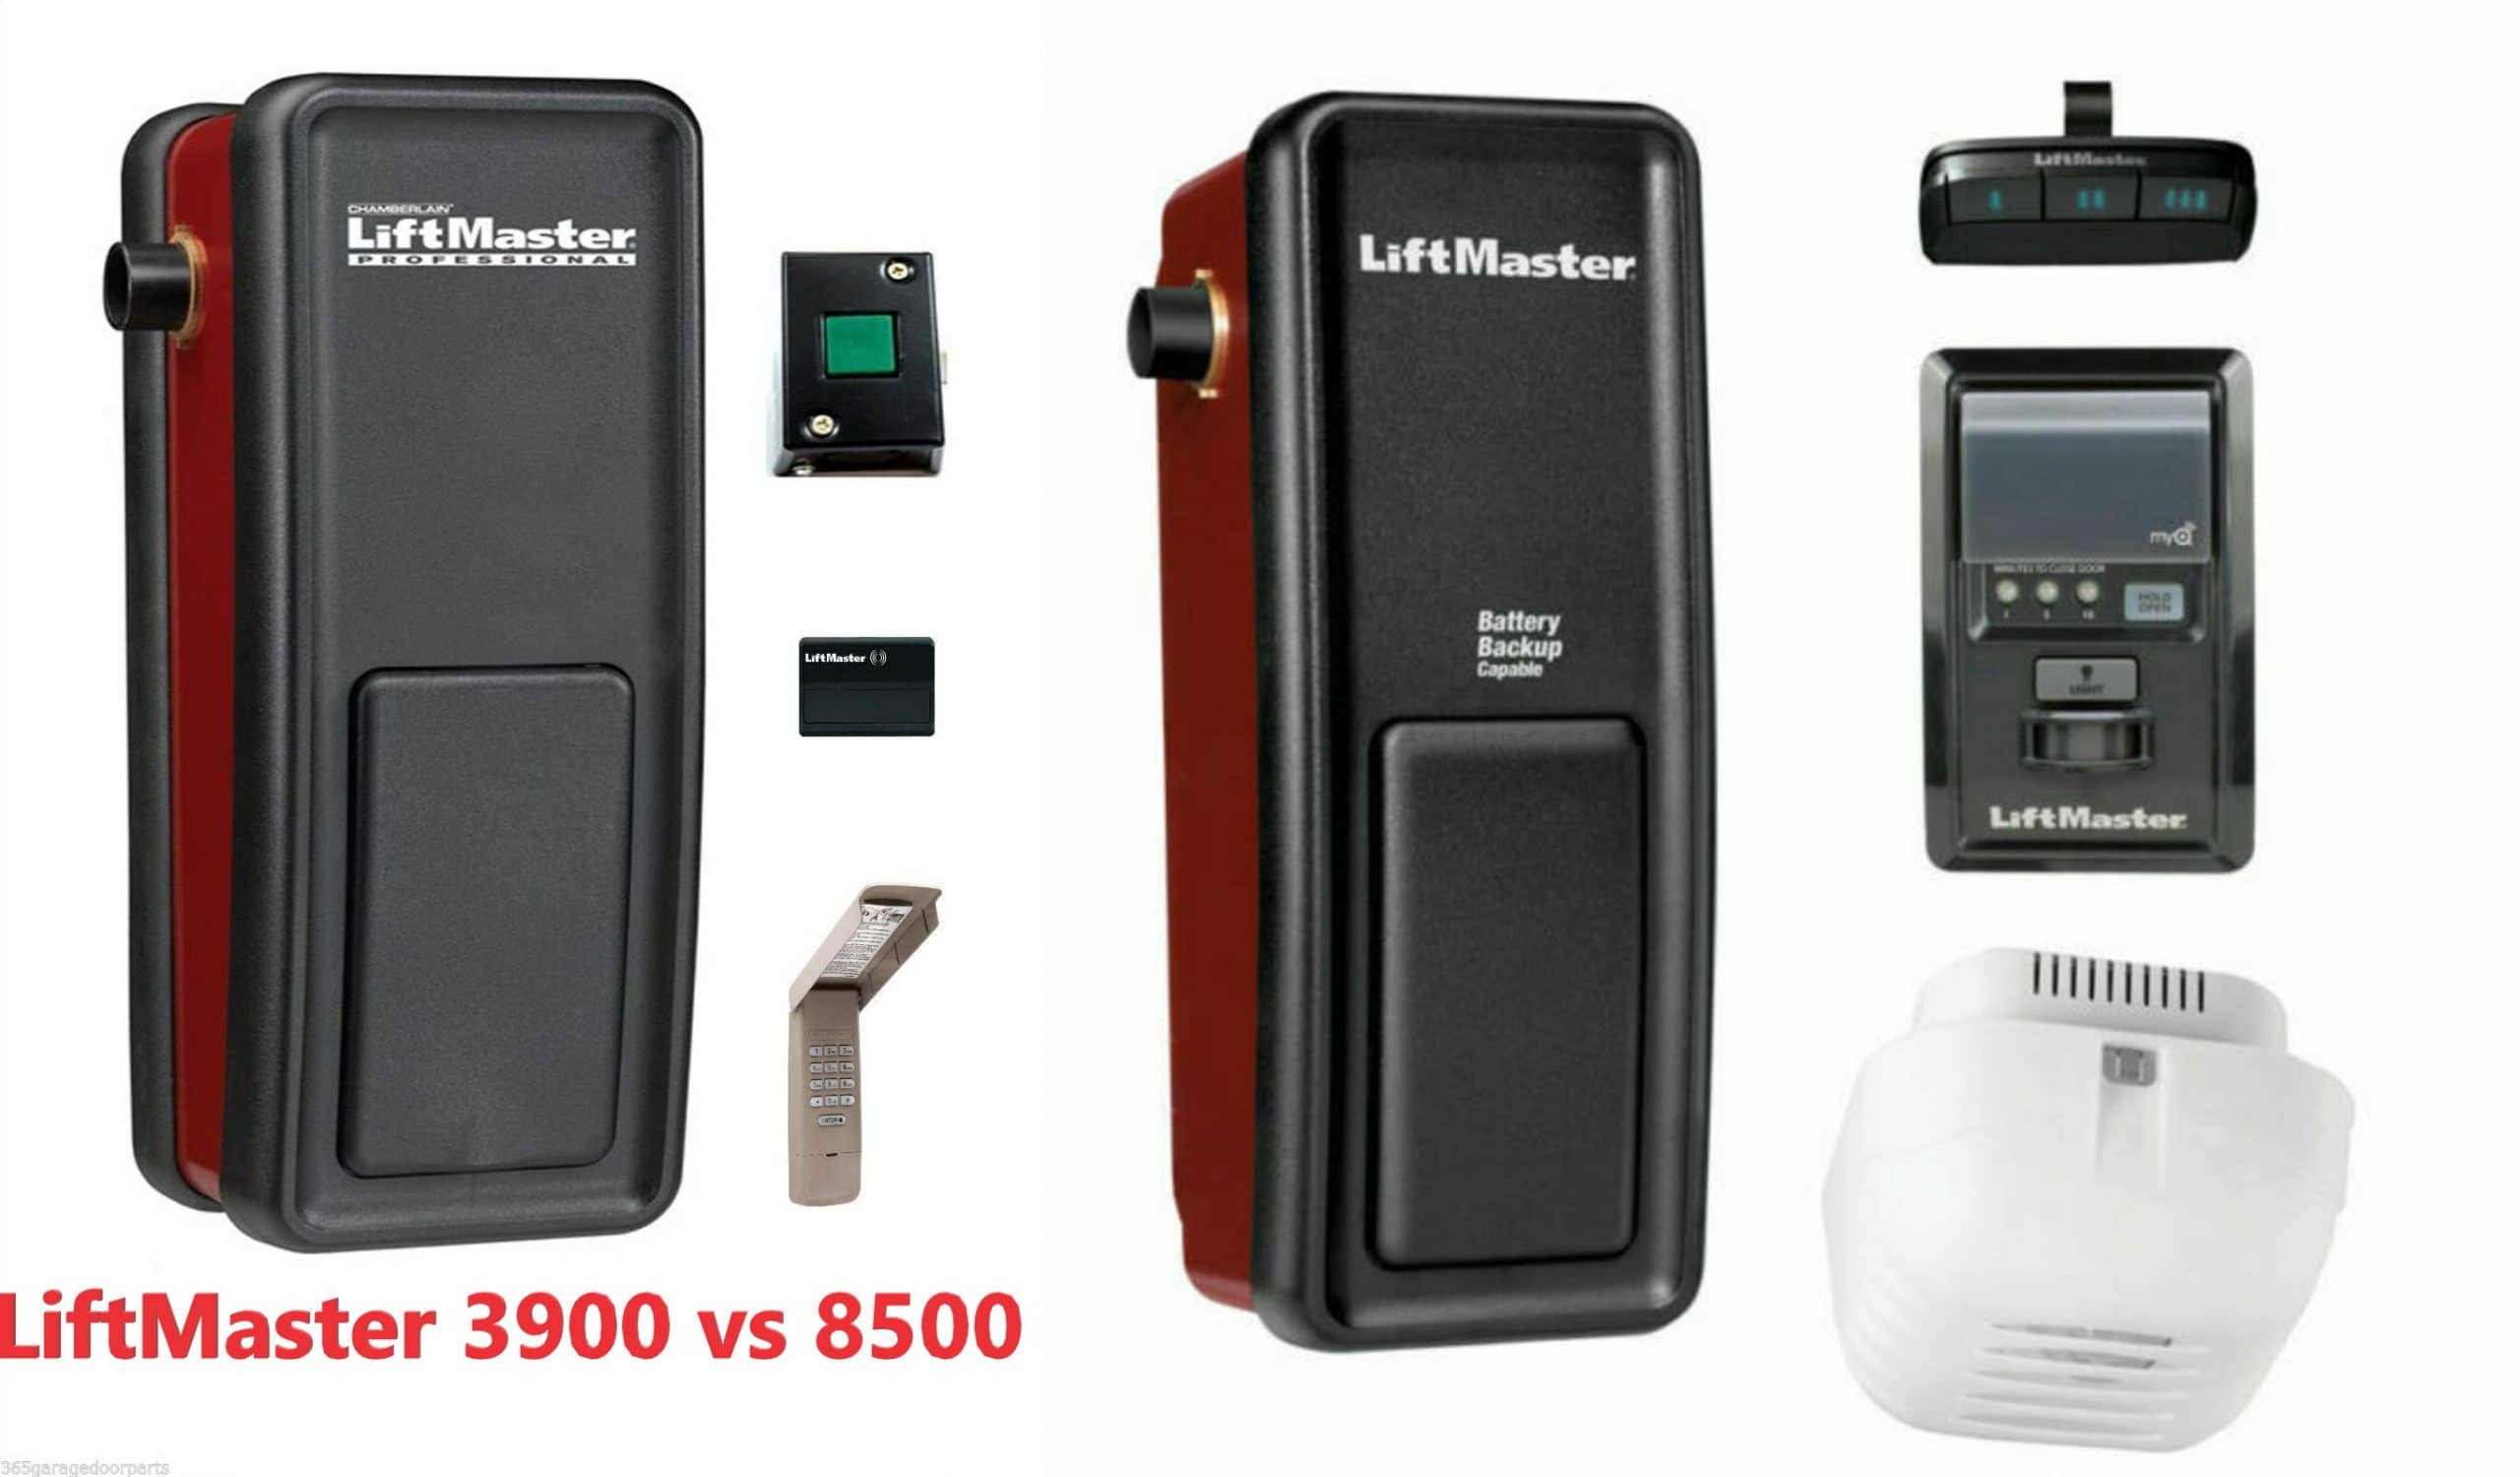 LiftMaster 3900 vs 8500